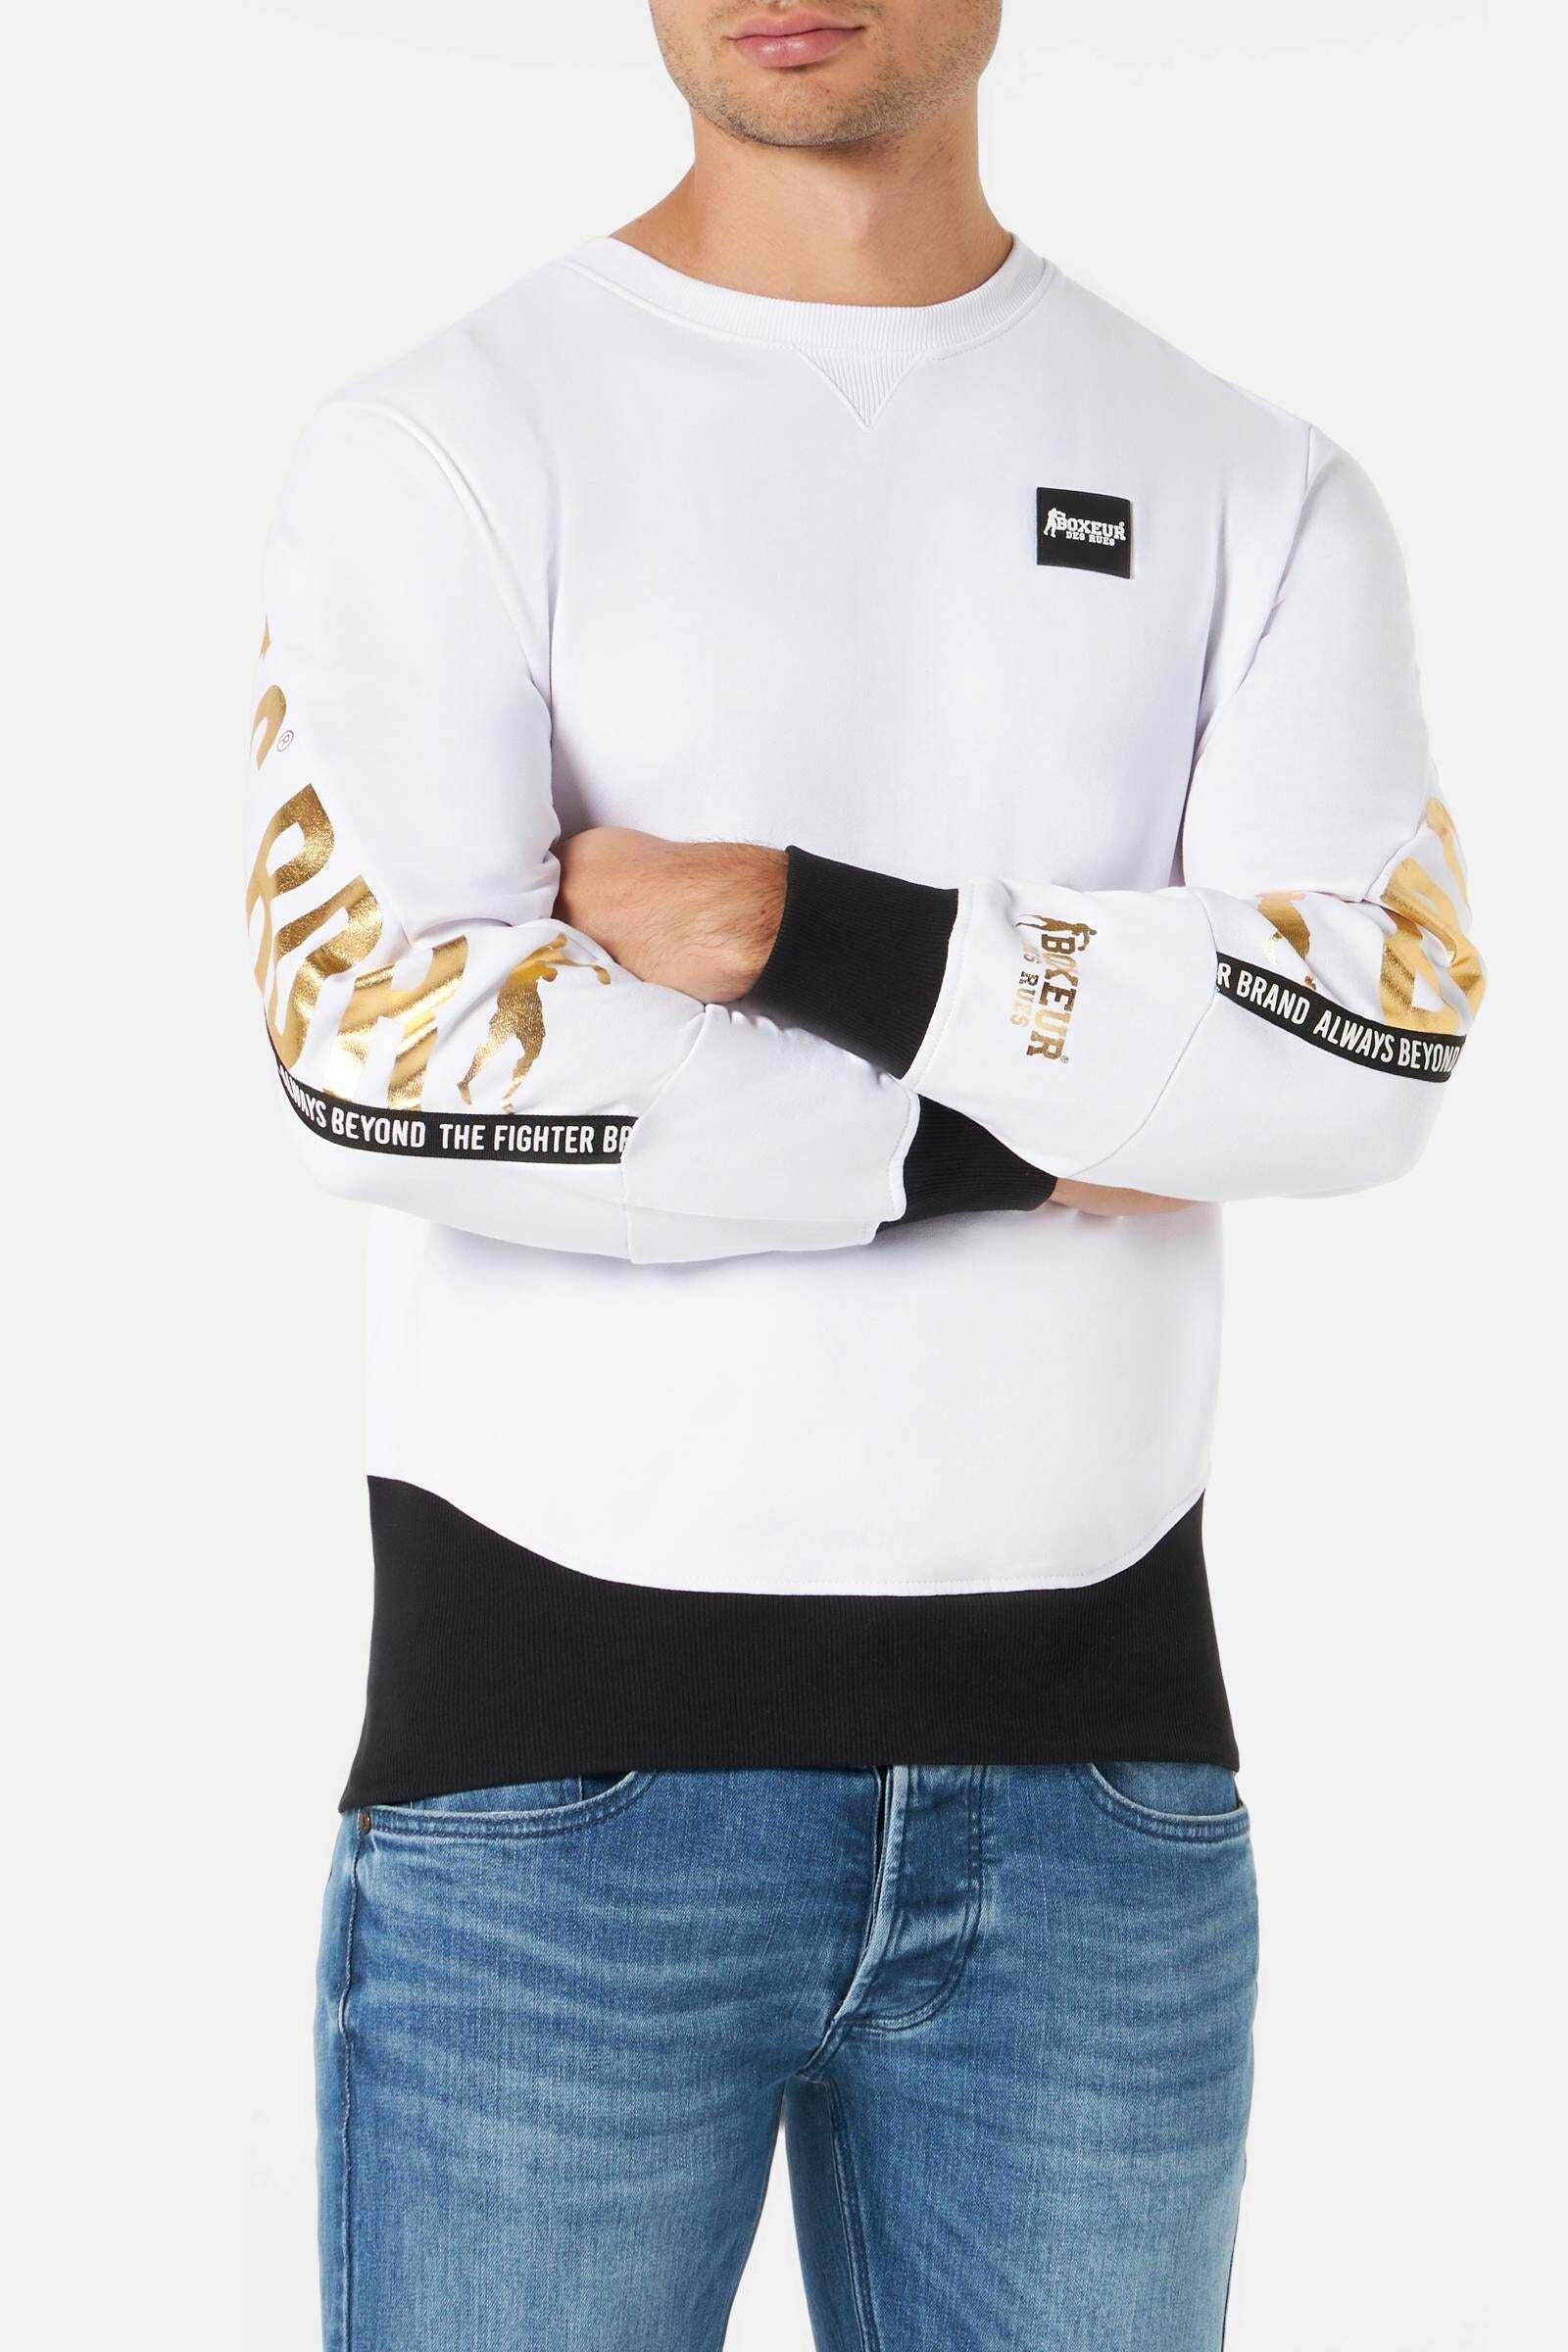 Sweatshirts Sweatshirt With Lettering Print Herren Weiss XL von BOXEUR DES RUES